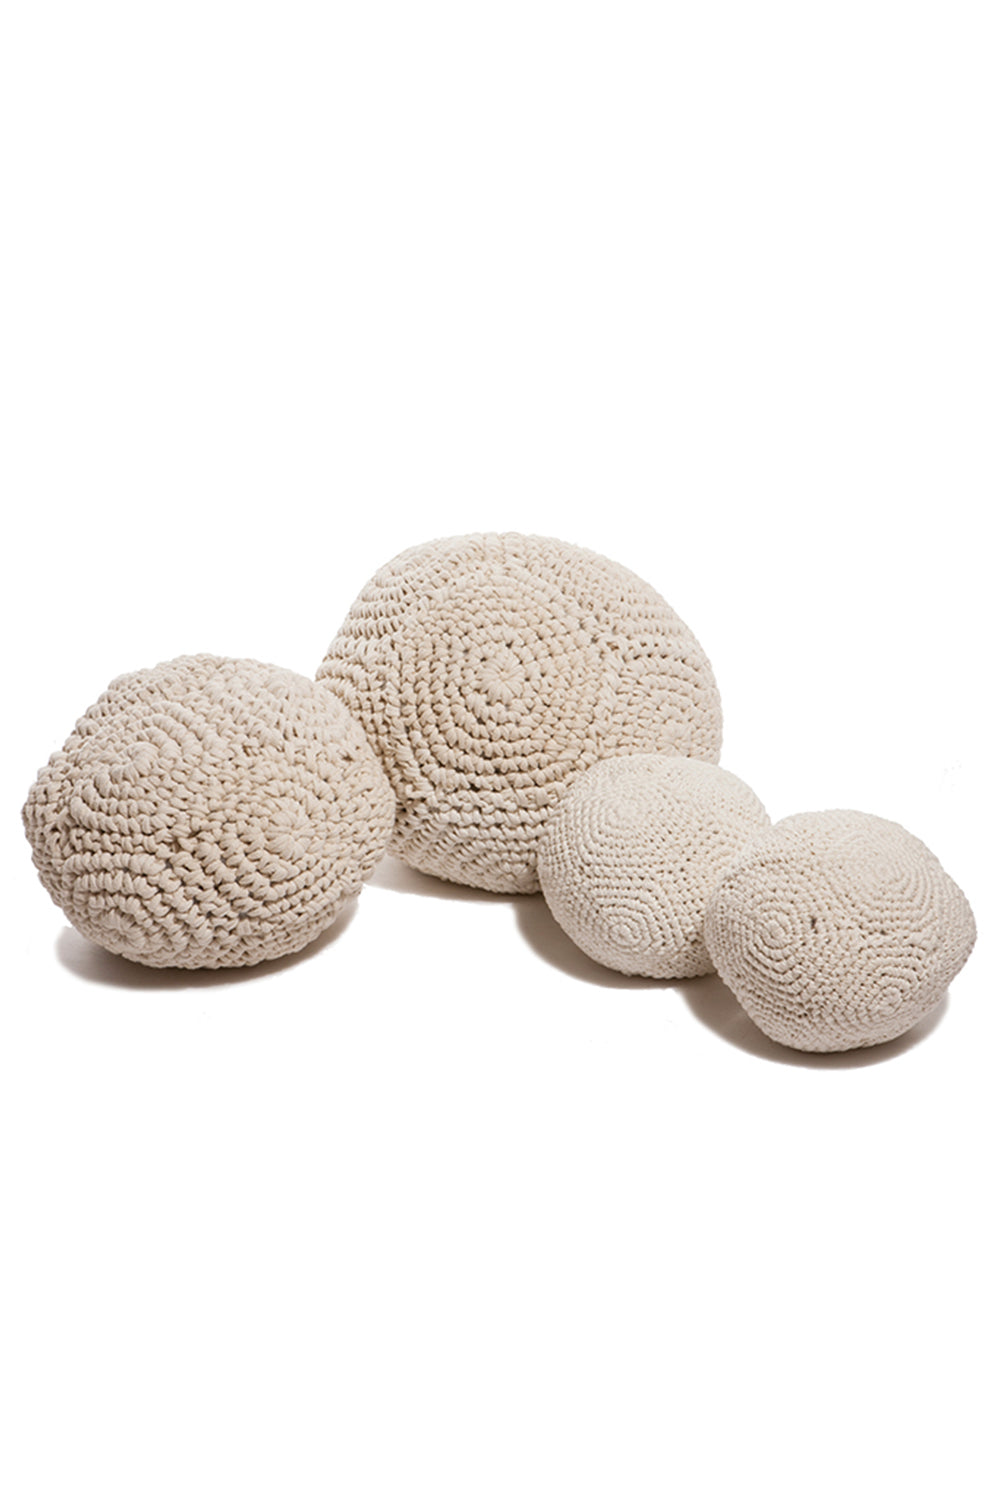 Carolina K Crochet Pillow Ball